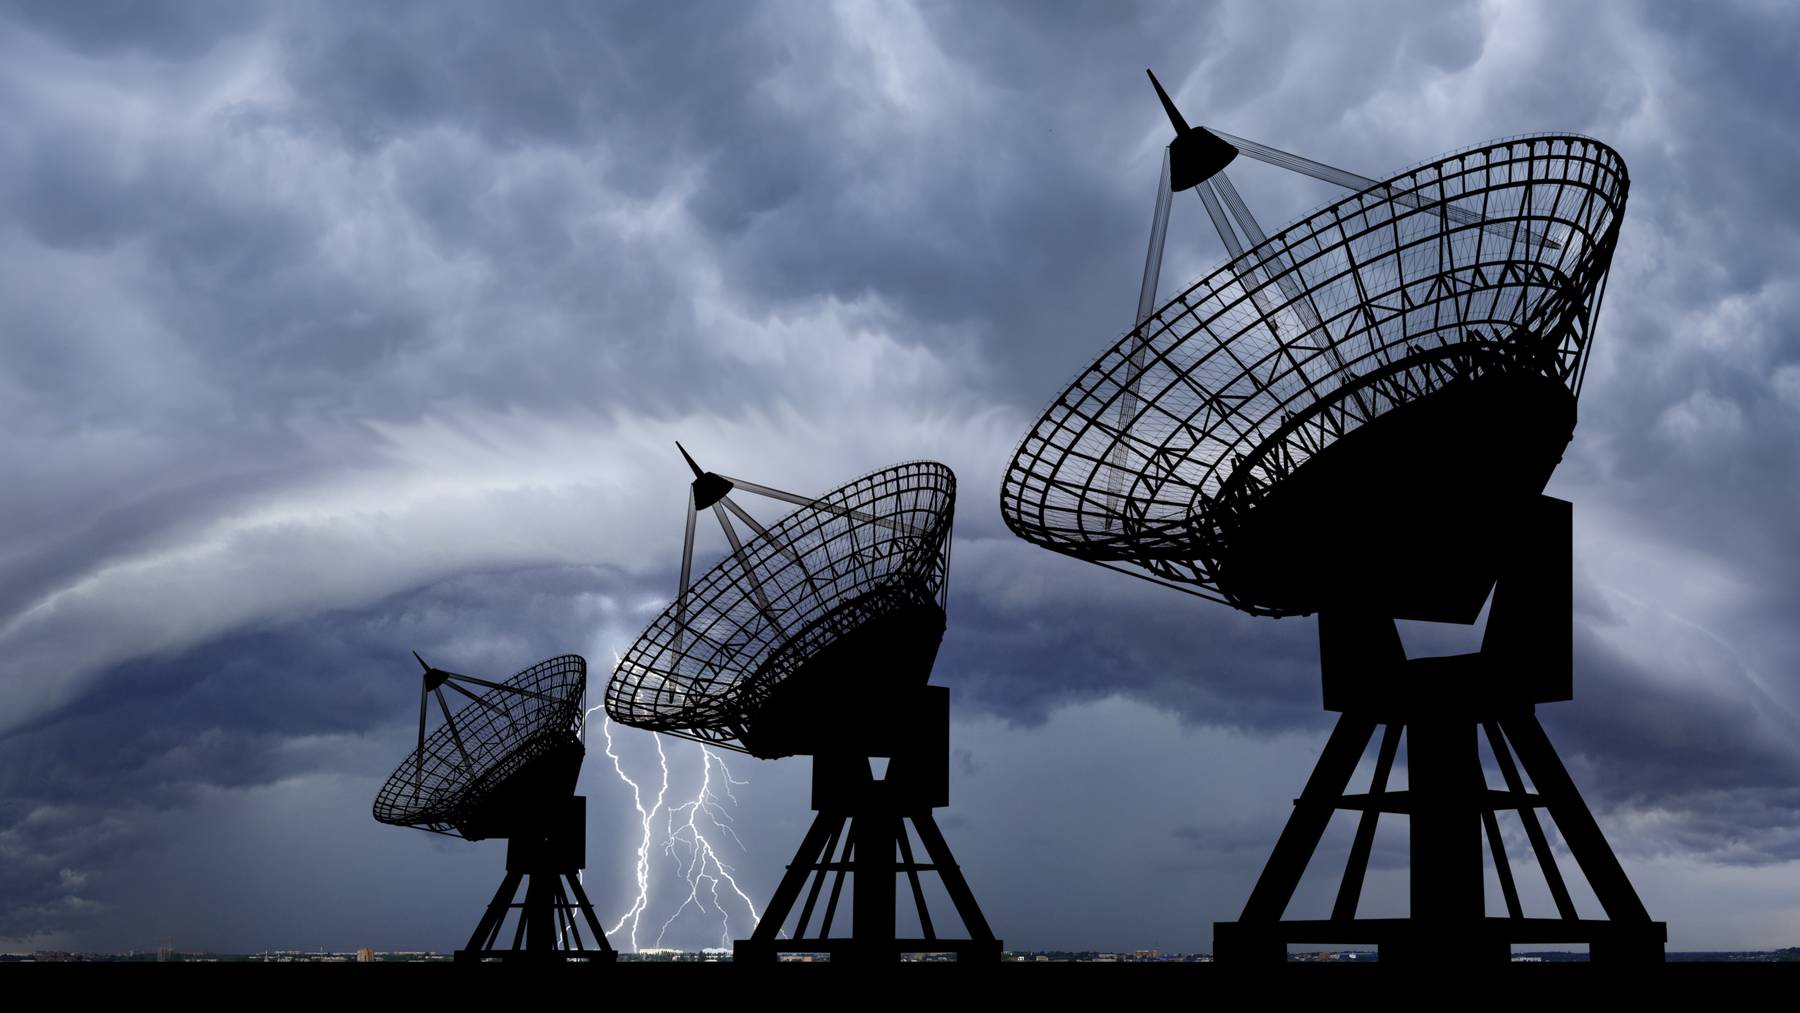 Satellitenschüsseln sammeln immer genauere Wetterdaten aus dem All.